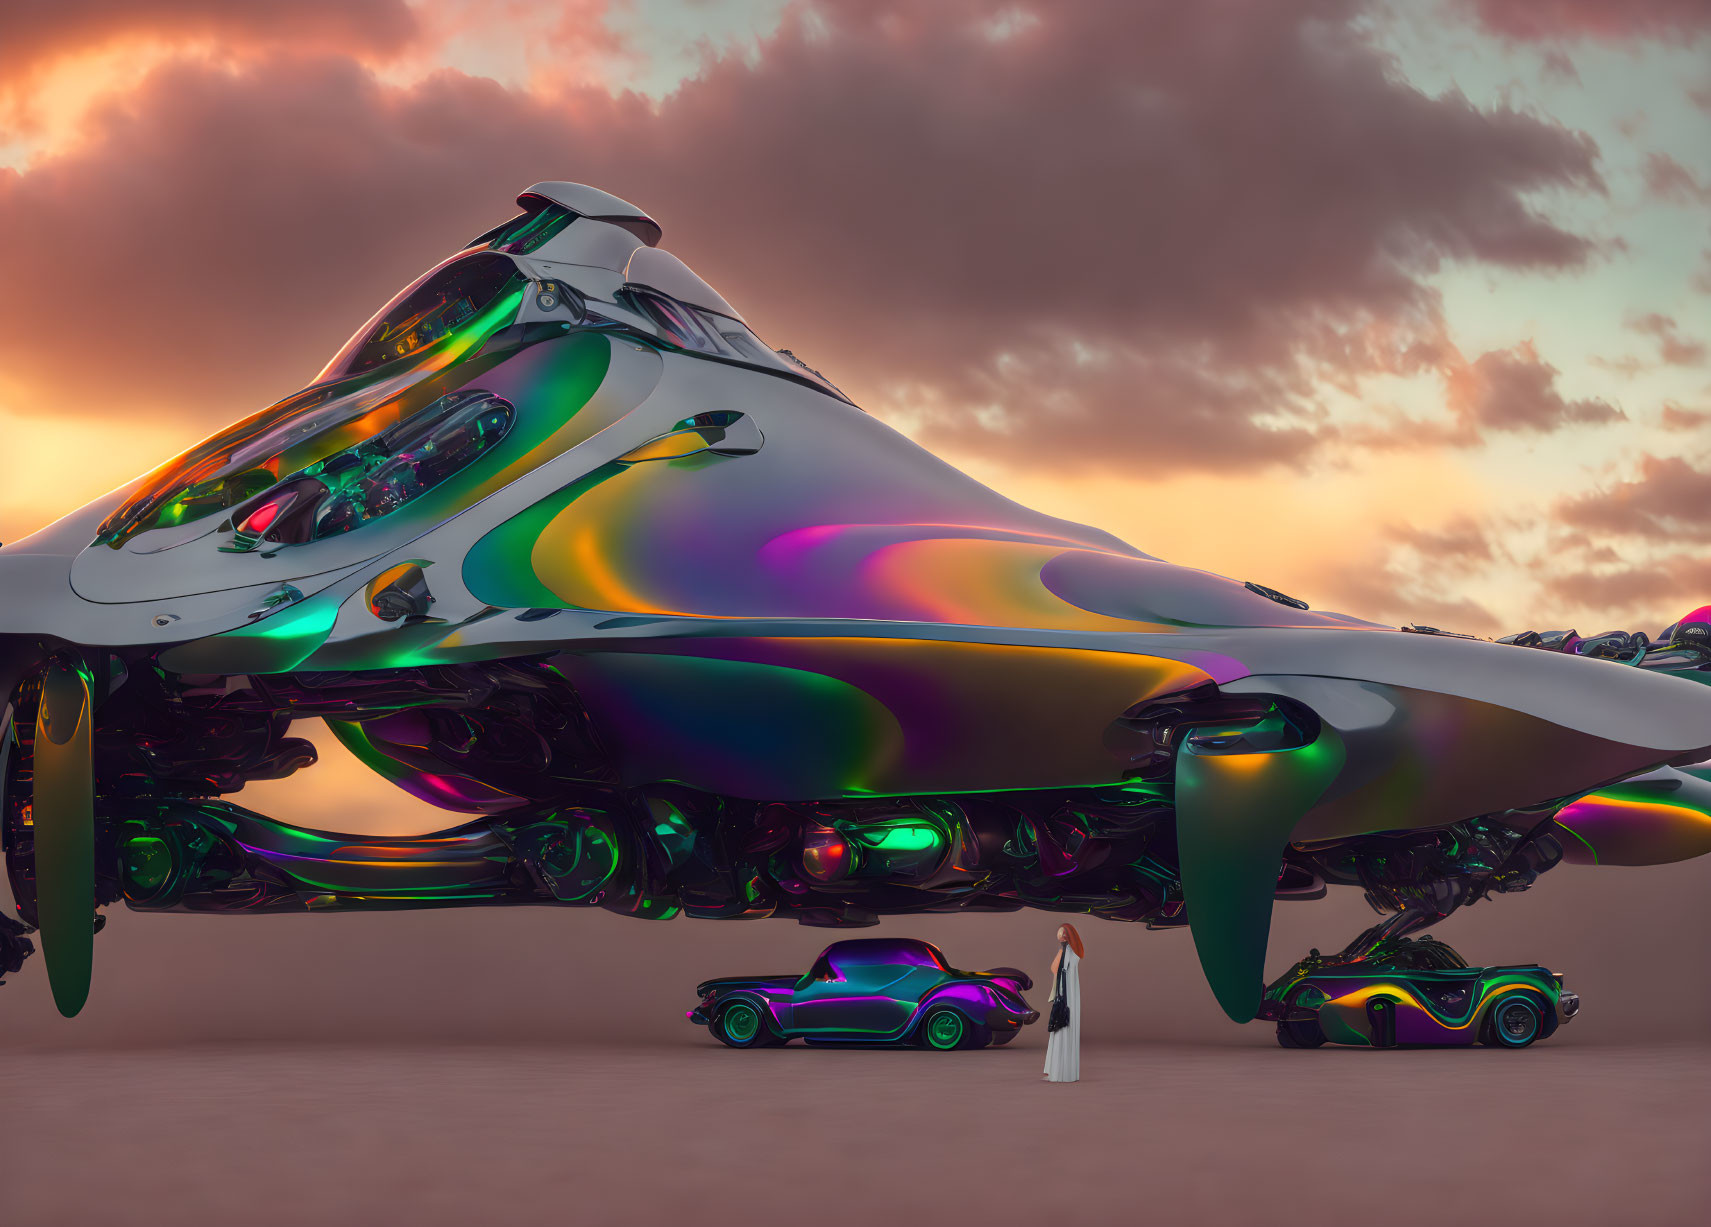 Iridescent spaceship, person, car, and bike in futuristic scene